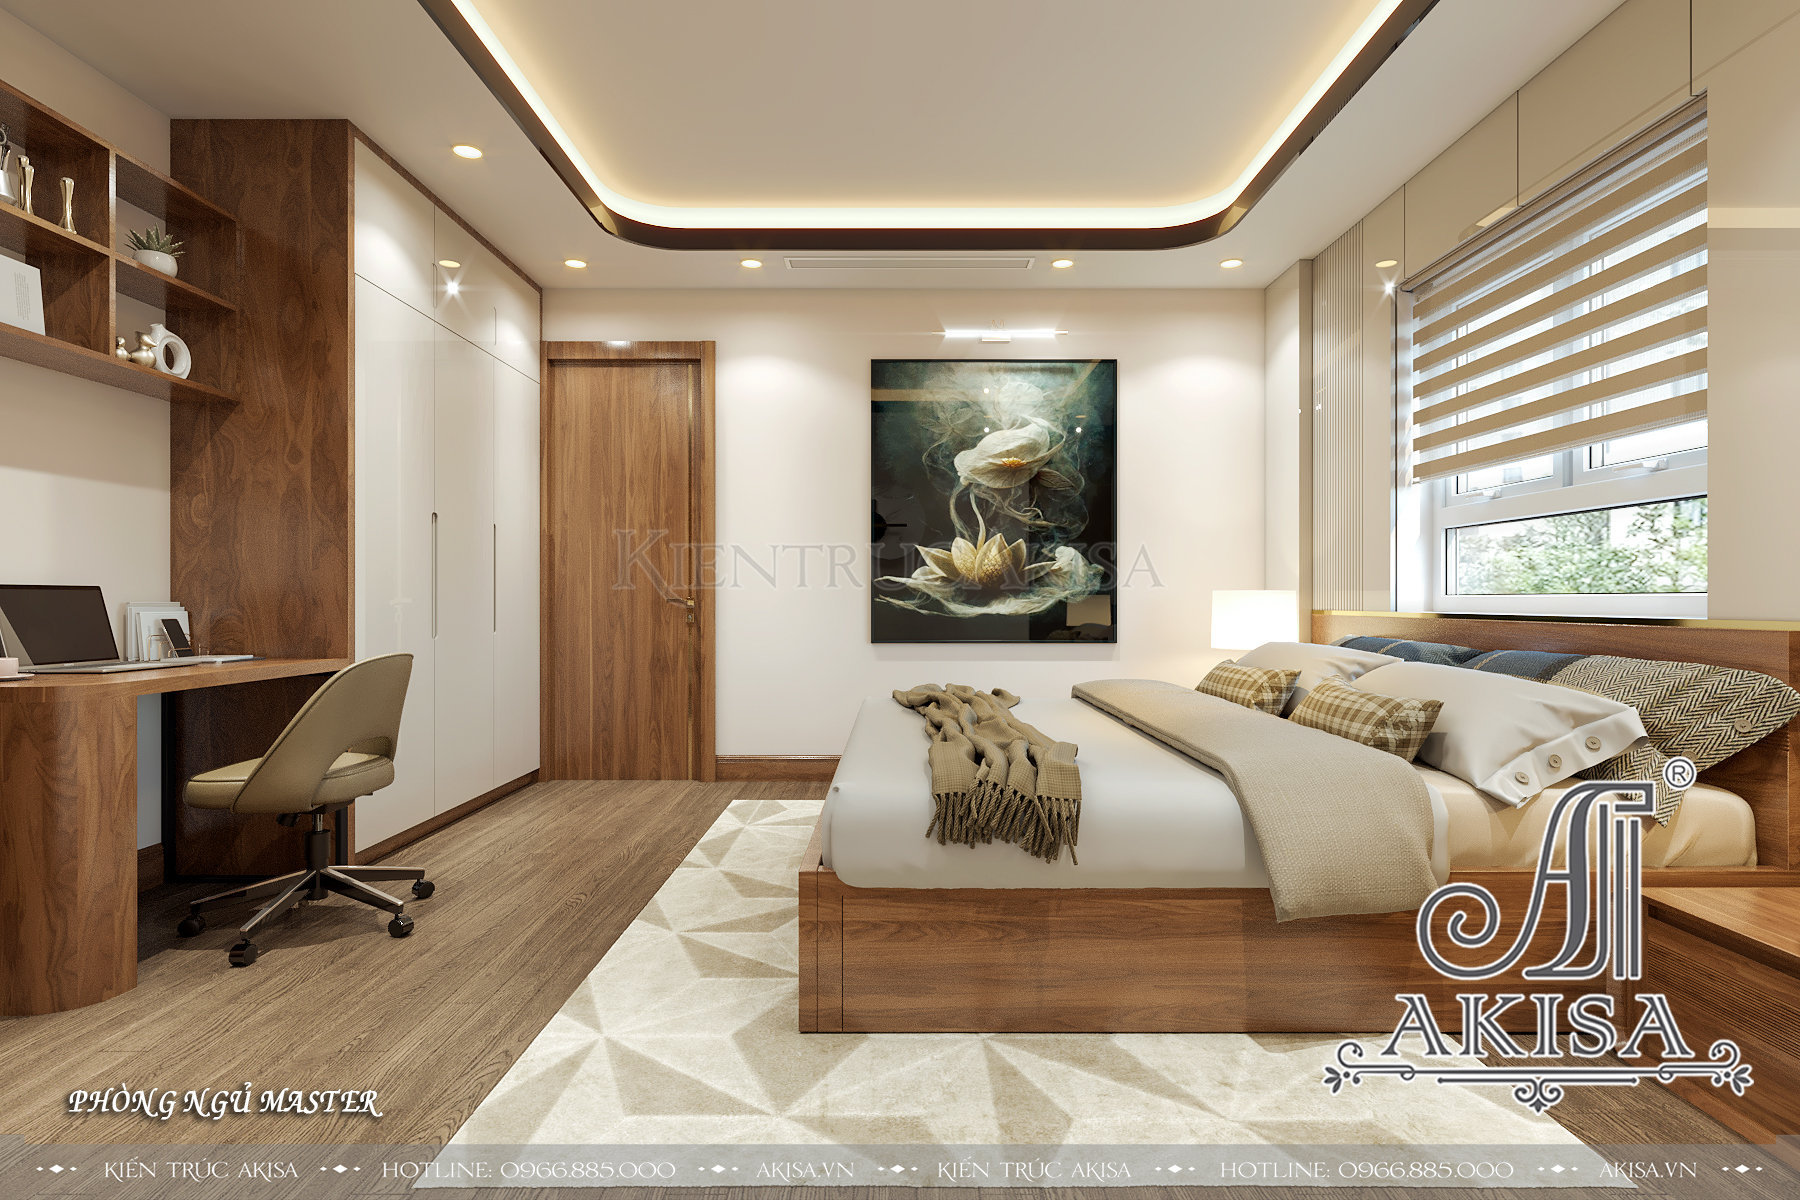 Thiết kế nội thất căn hộ chung cư phong cách hiện đại  - Phòng ngủ Master